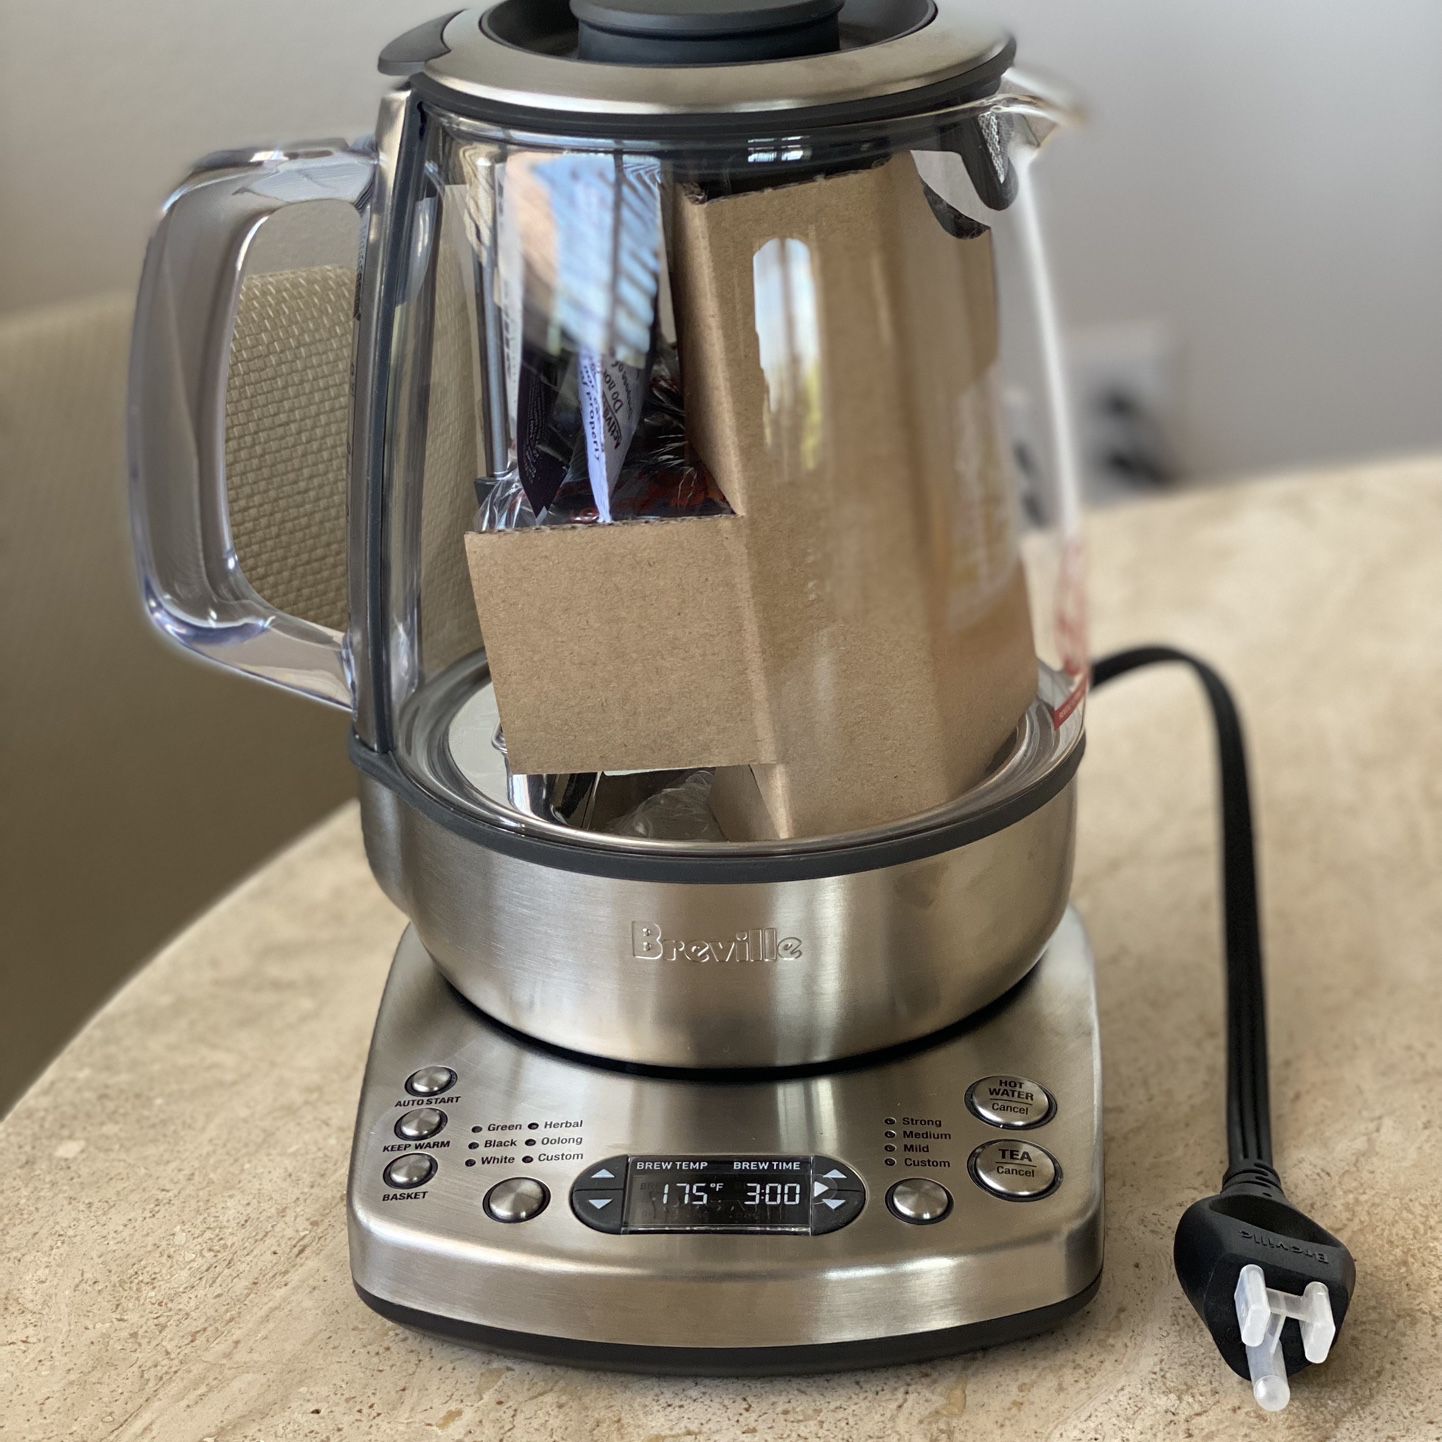 Breville tea maker – FIRST RUN UX